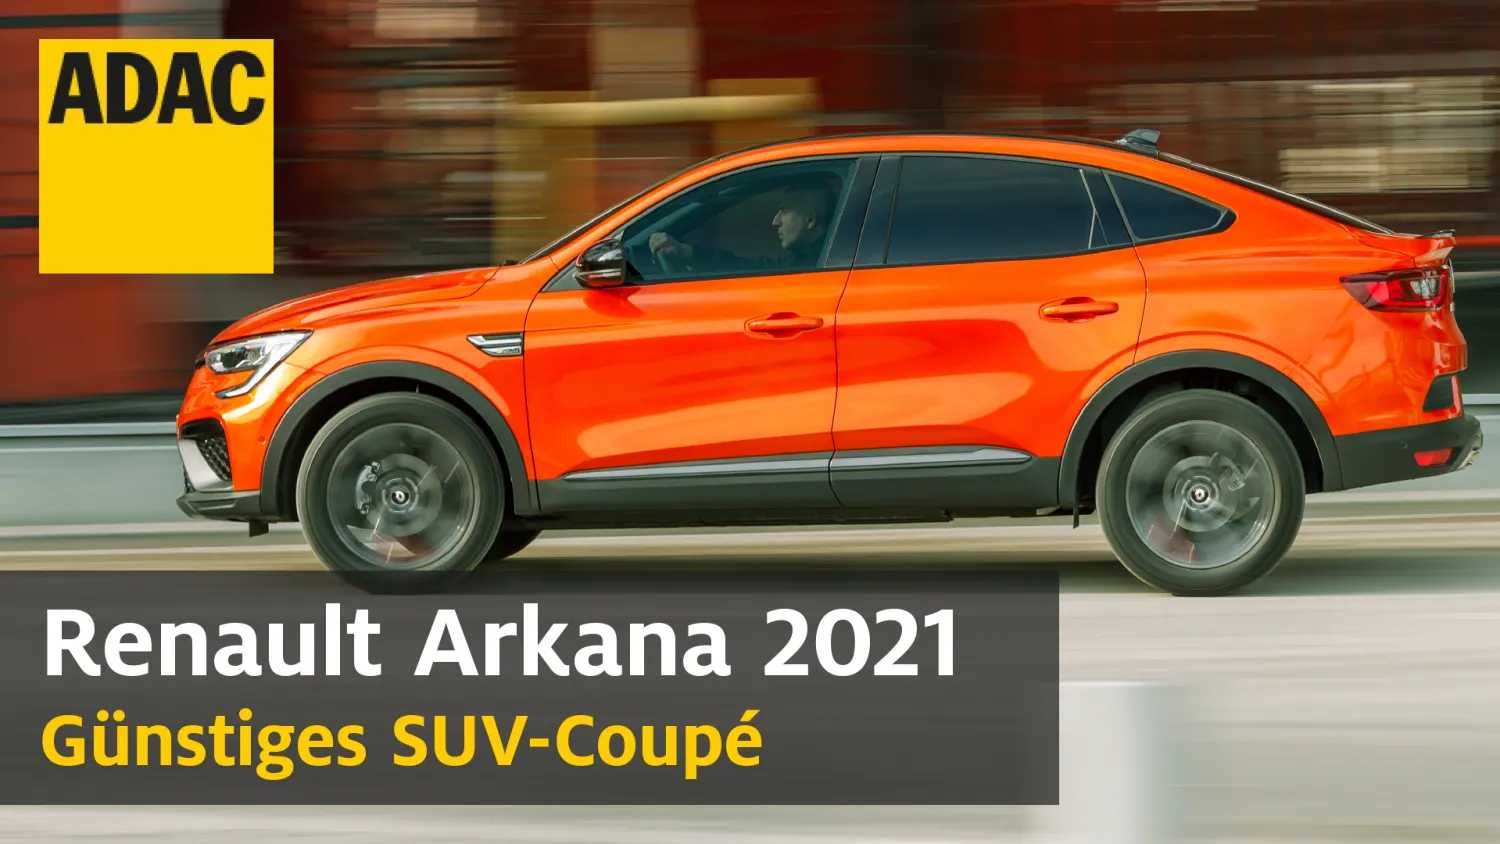 Renault Arkana: Ist der SUV-Coupé eine Alternative zum BMW X4?